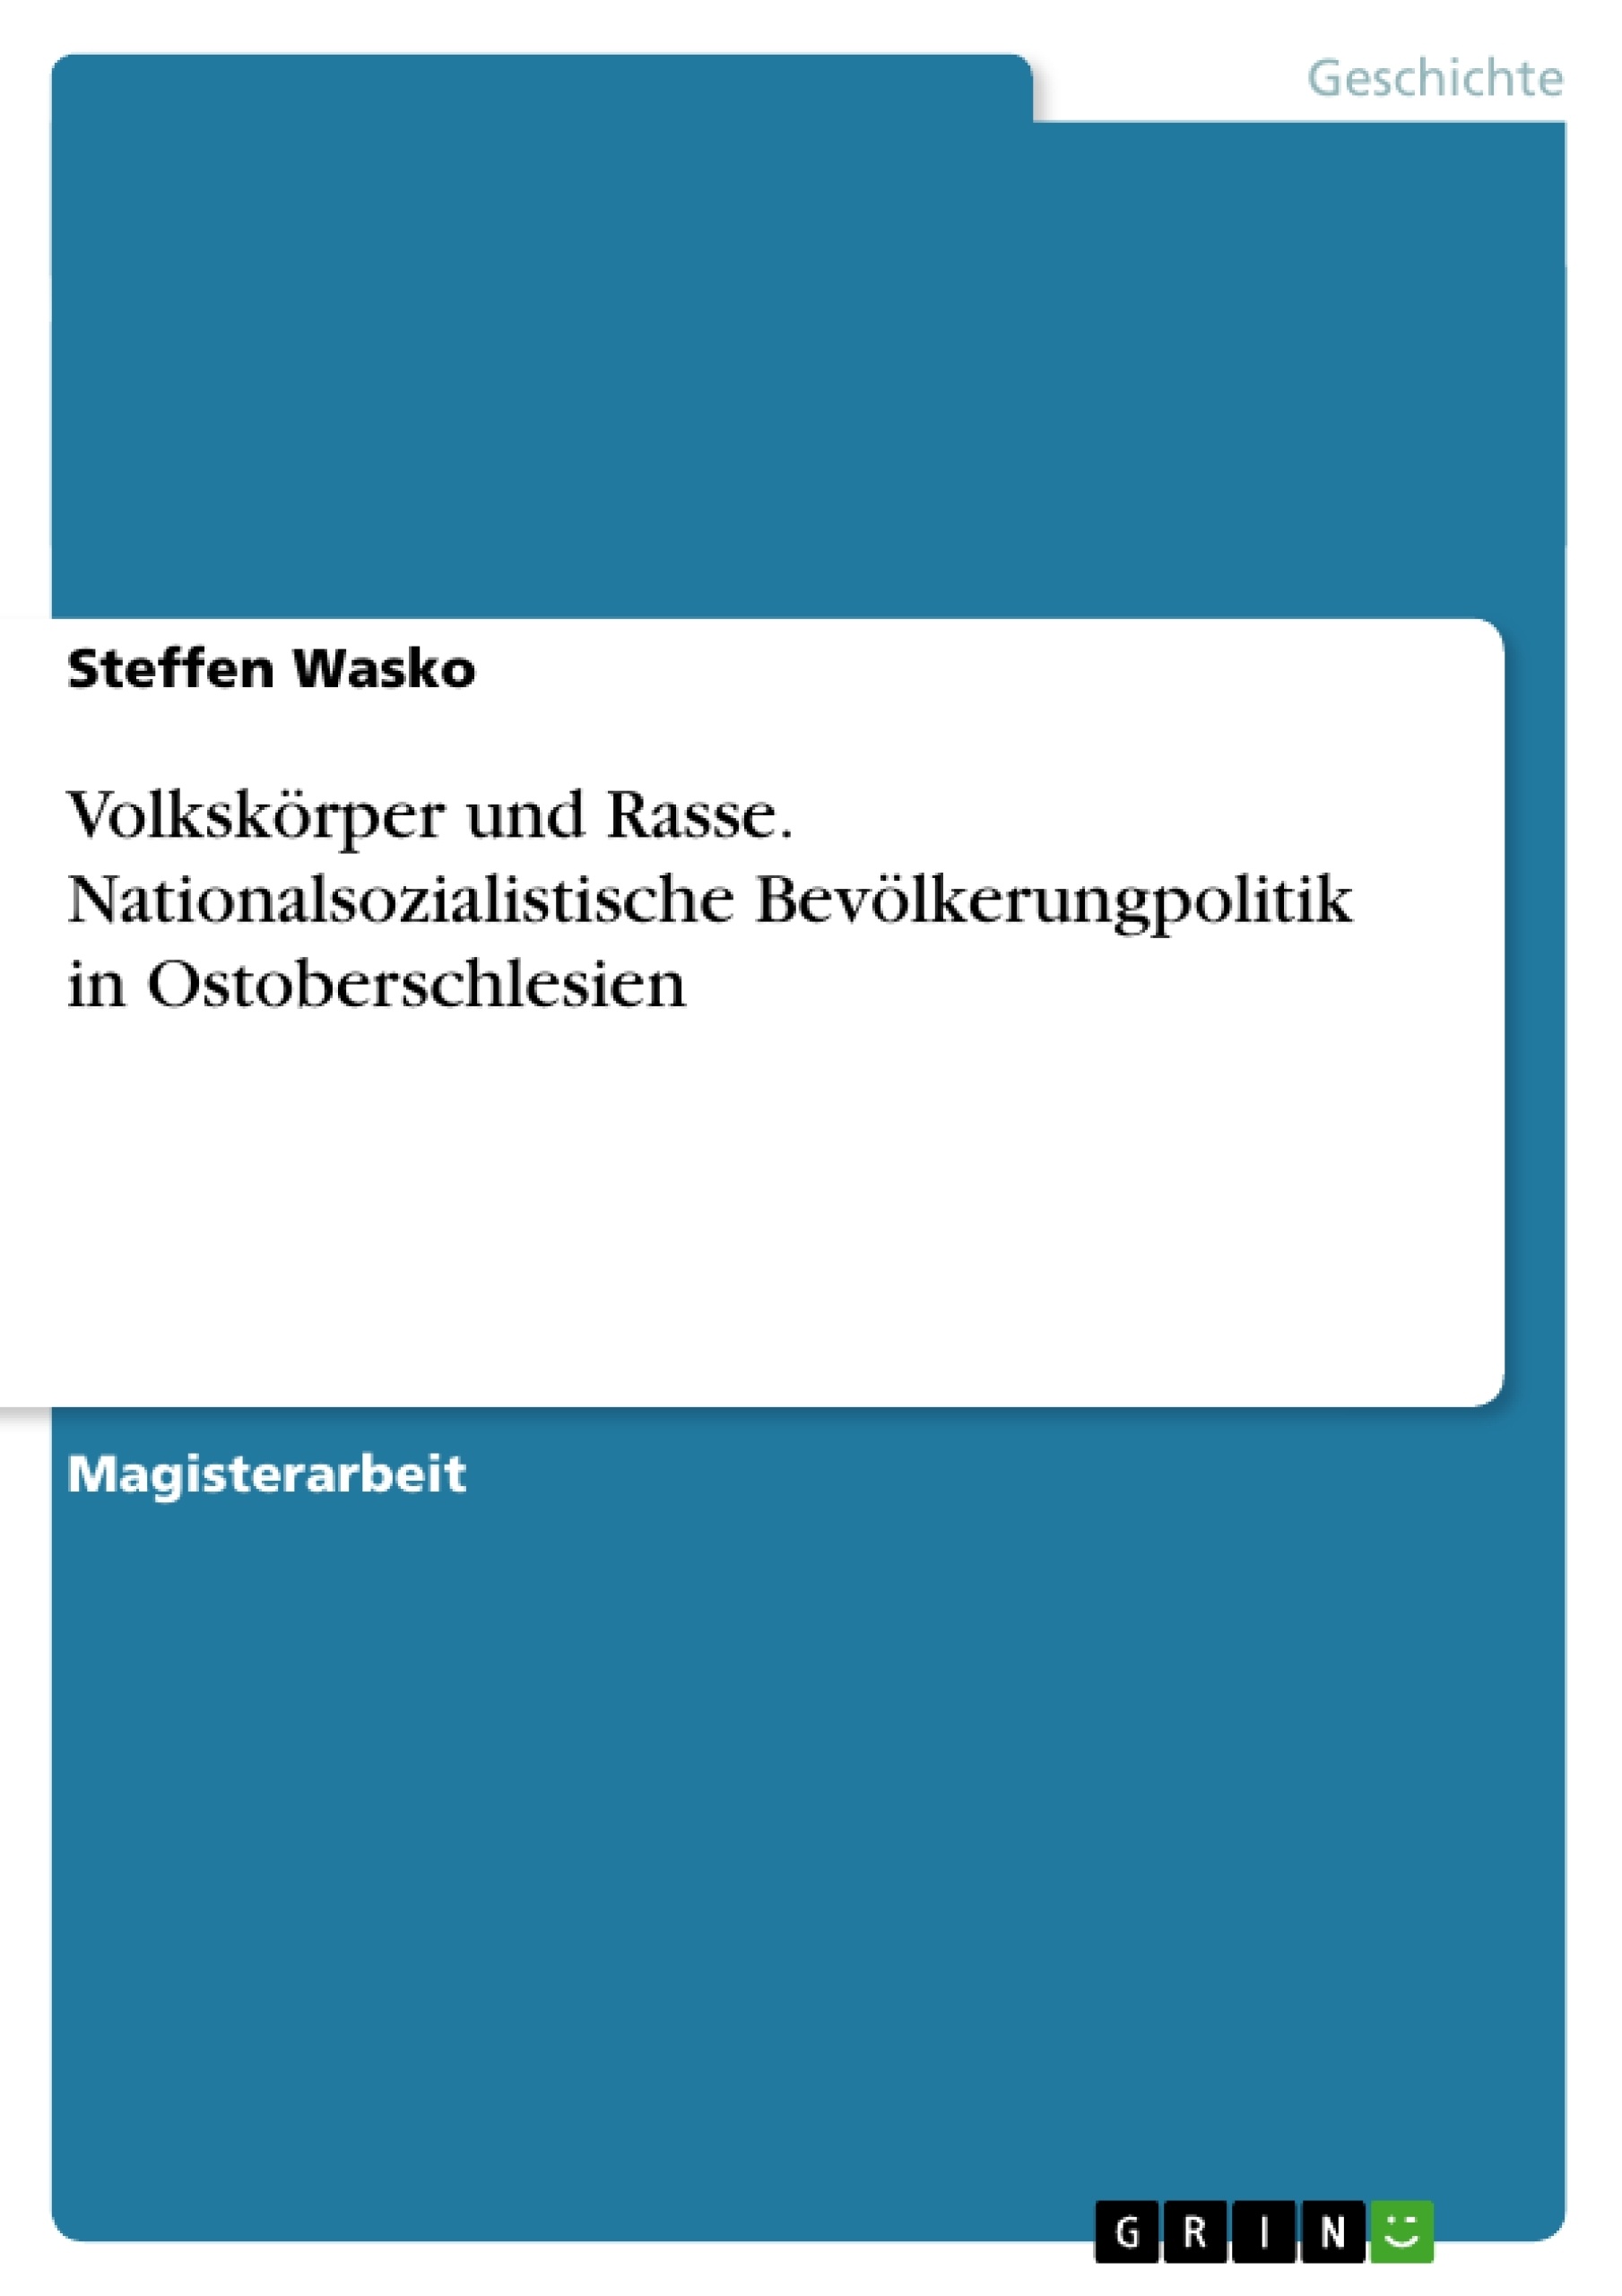 Titel: Volkskörper und Rasse. Nationalsozialistische Bevölkerungpolitik in Ostoberschlesien